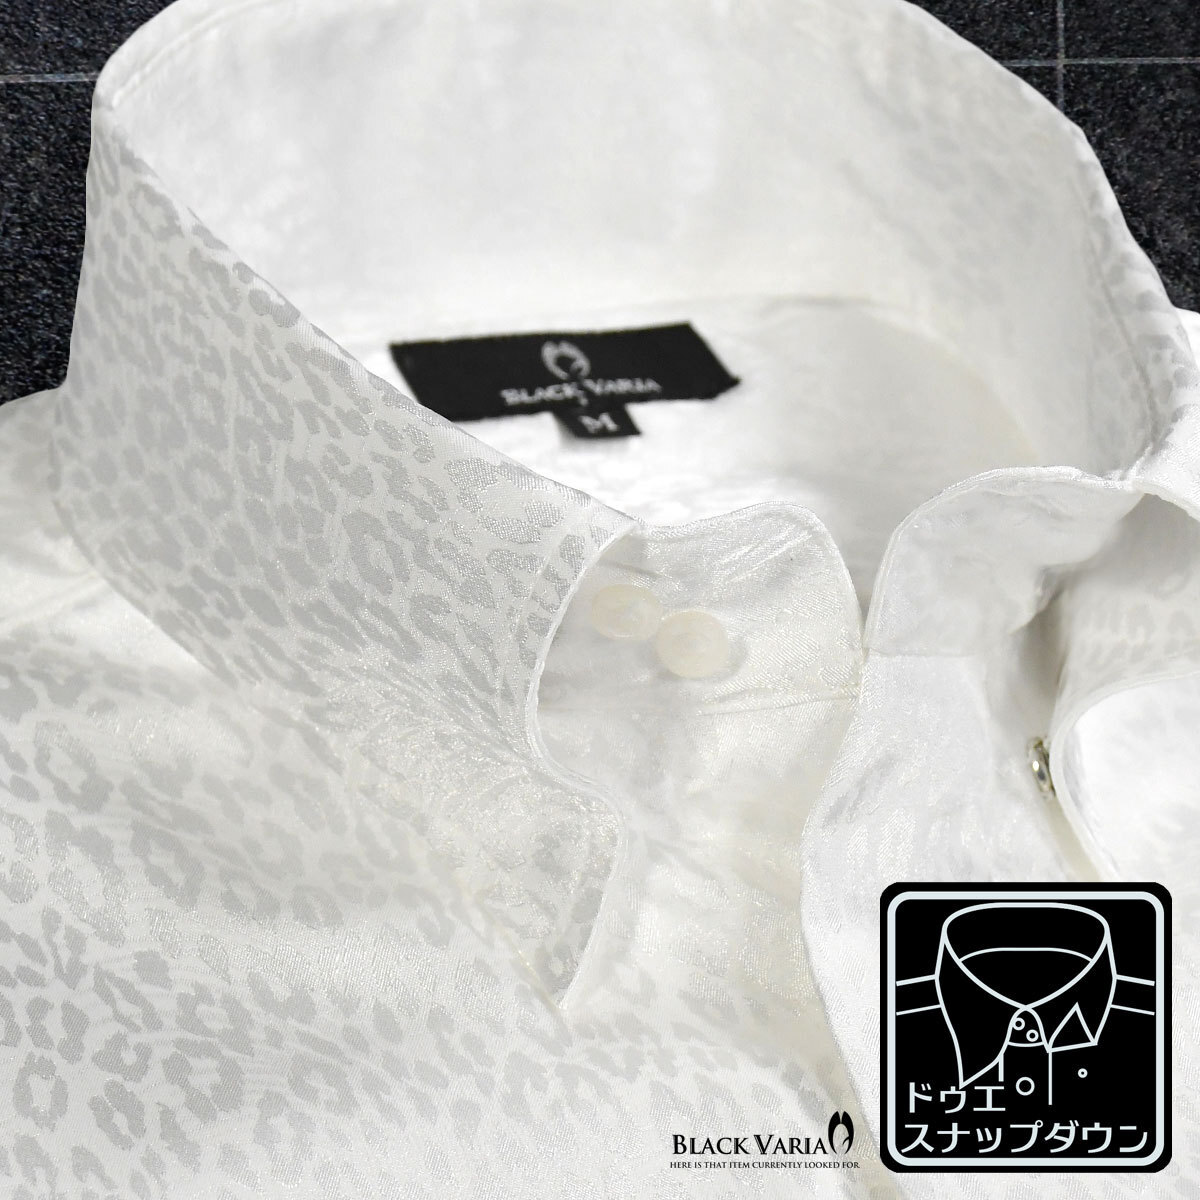 181710-wh BLACK VARIA ドゥエボットーニ ヒョウ柄 豹 ジャガード スナップダウン ドレスシャツ 日本製 メンズ(ホワイト白) S パーティー_スナップダウン